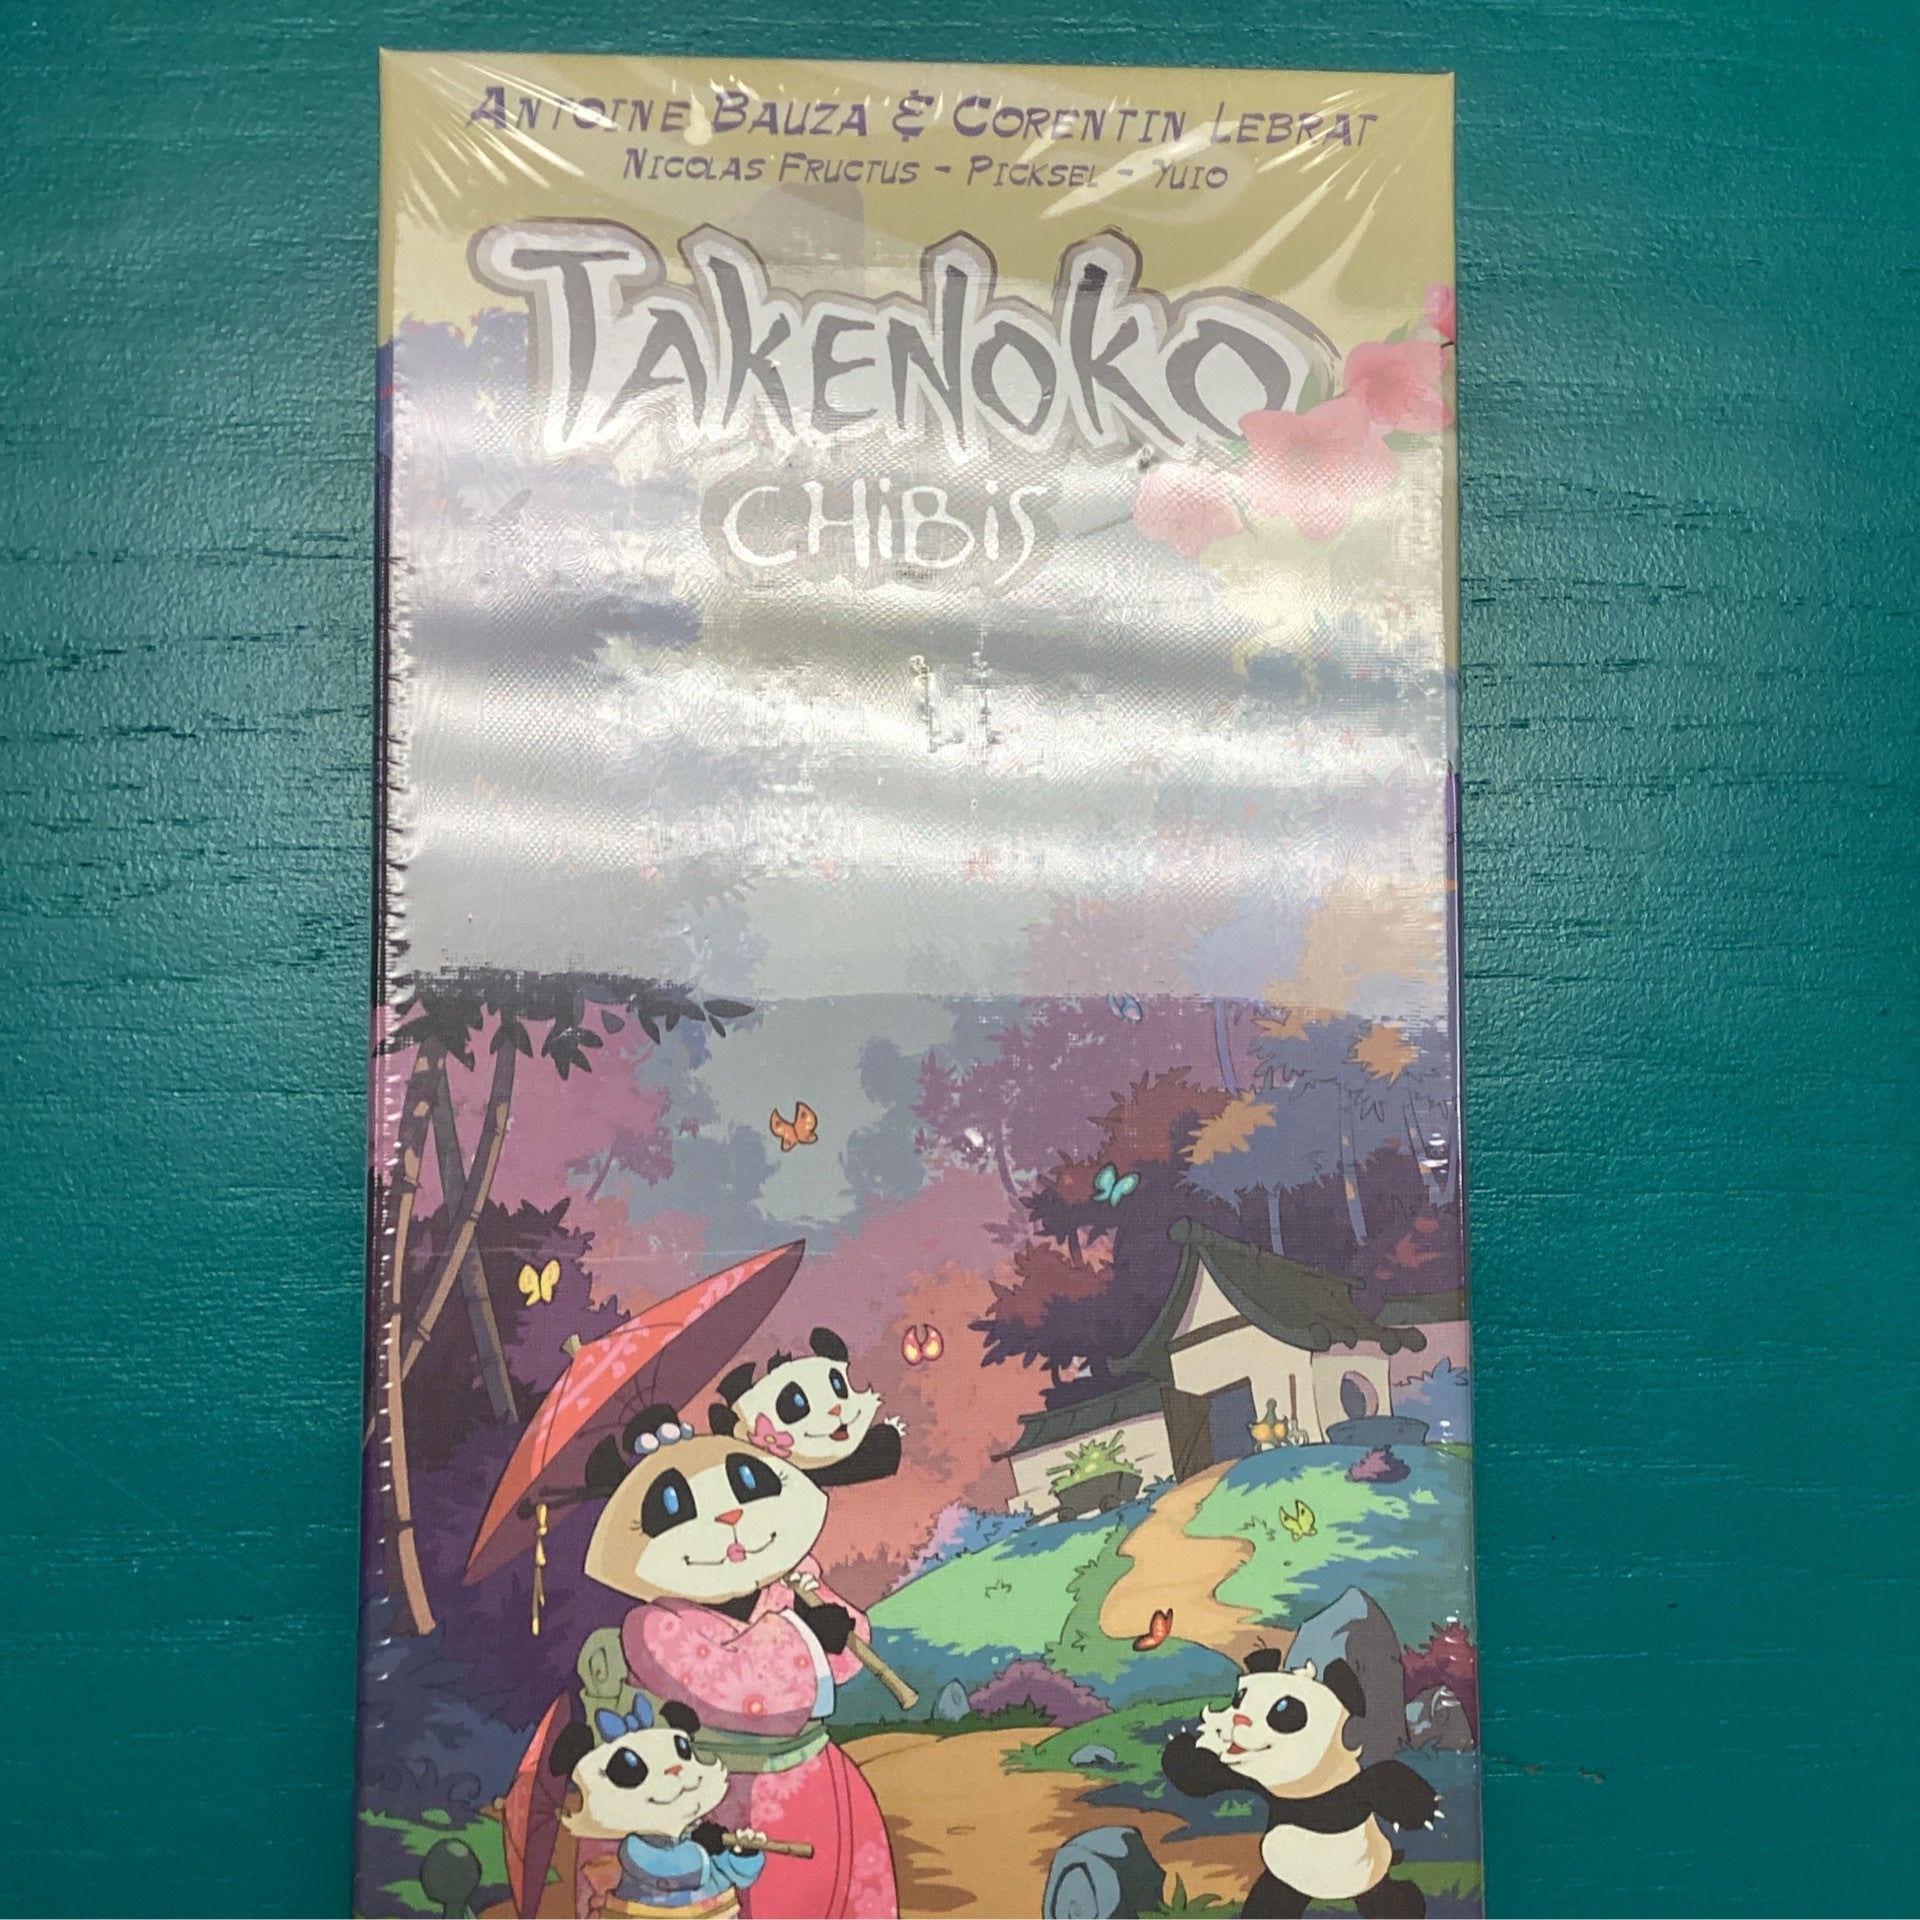 Takenoko ChiBi Expansion